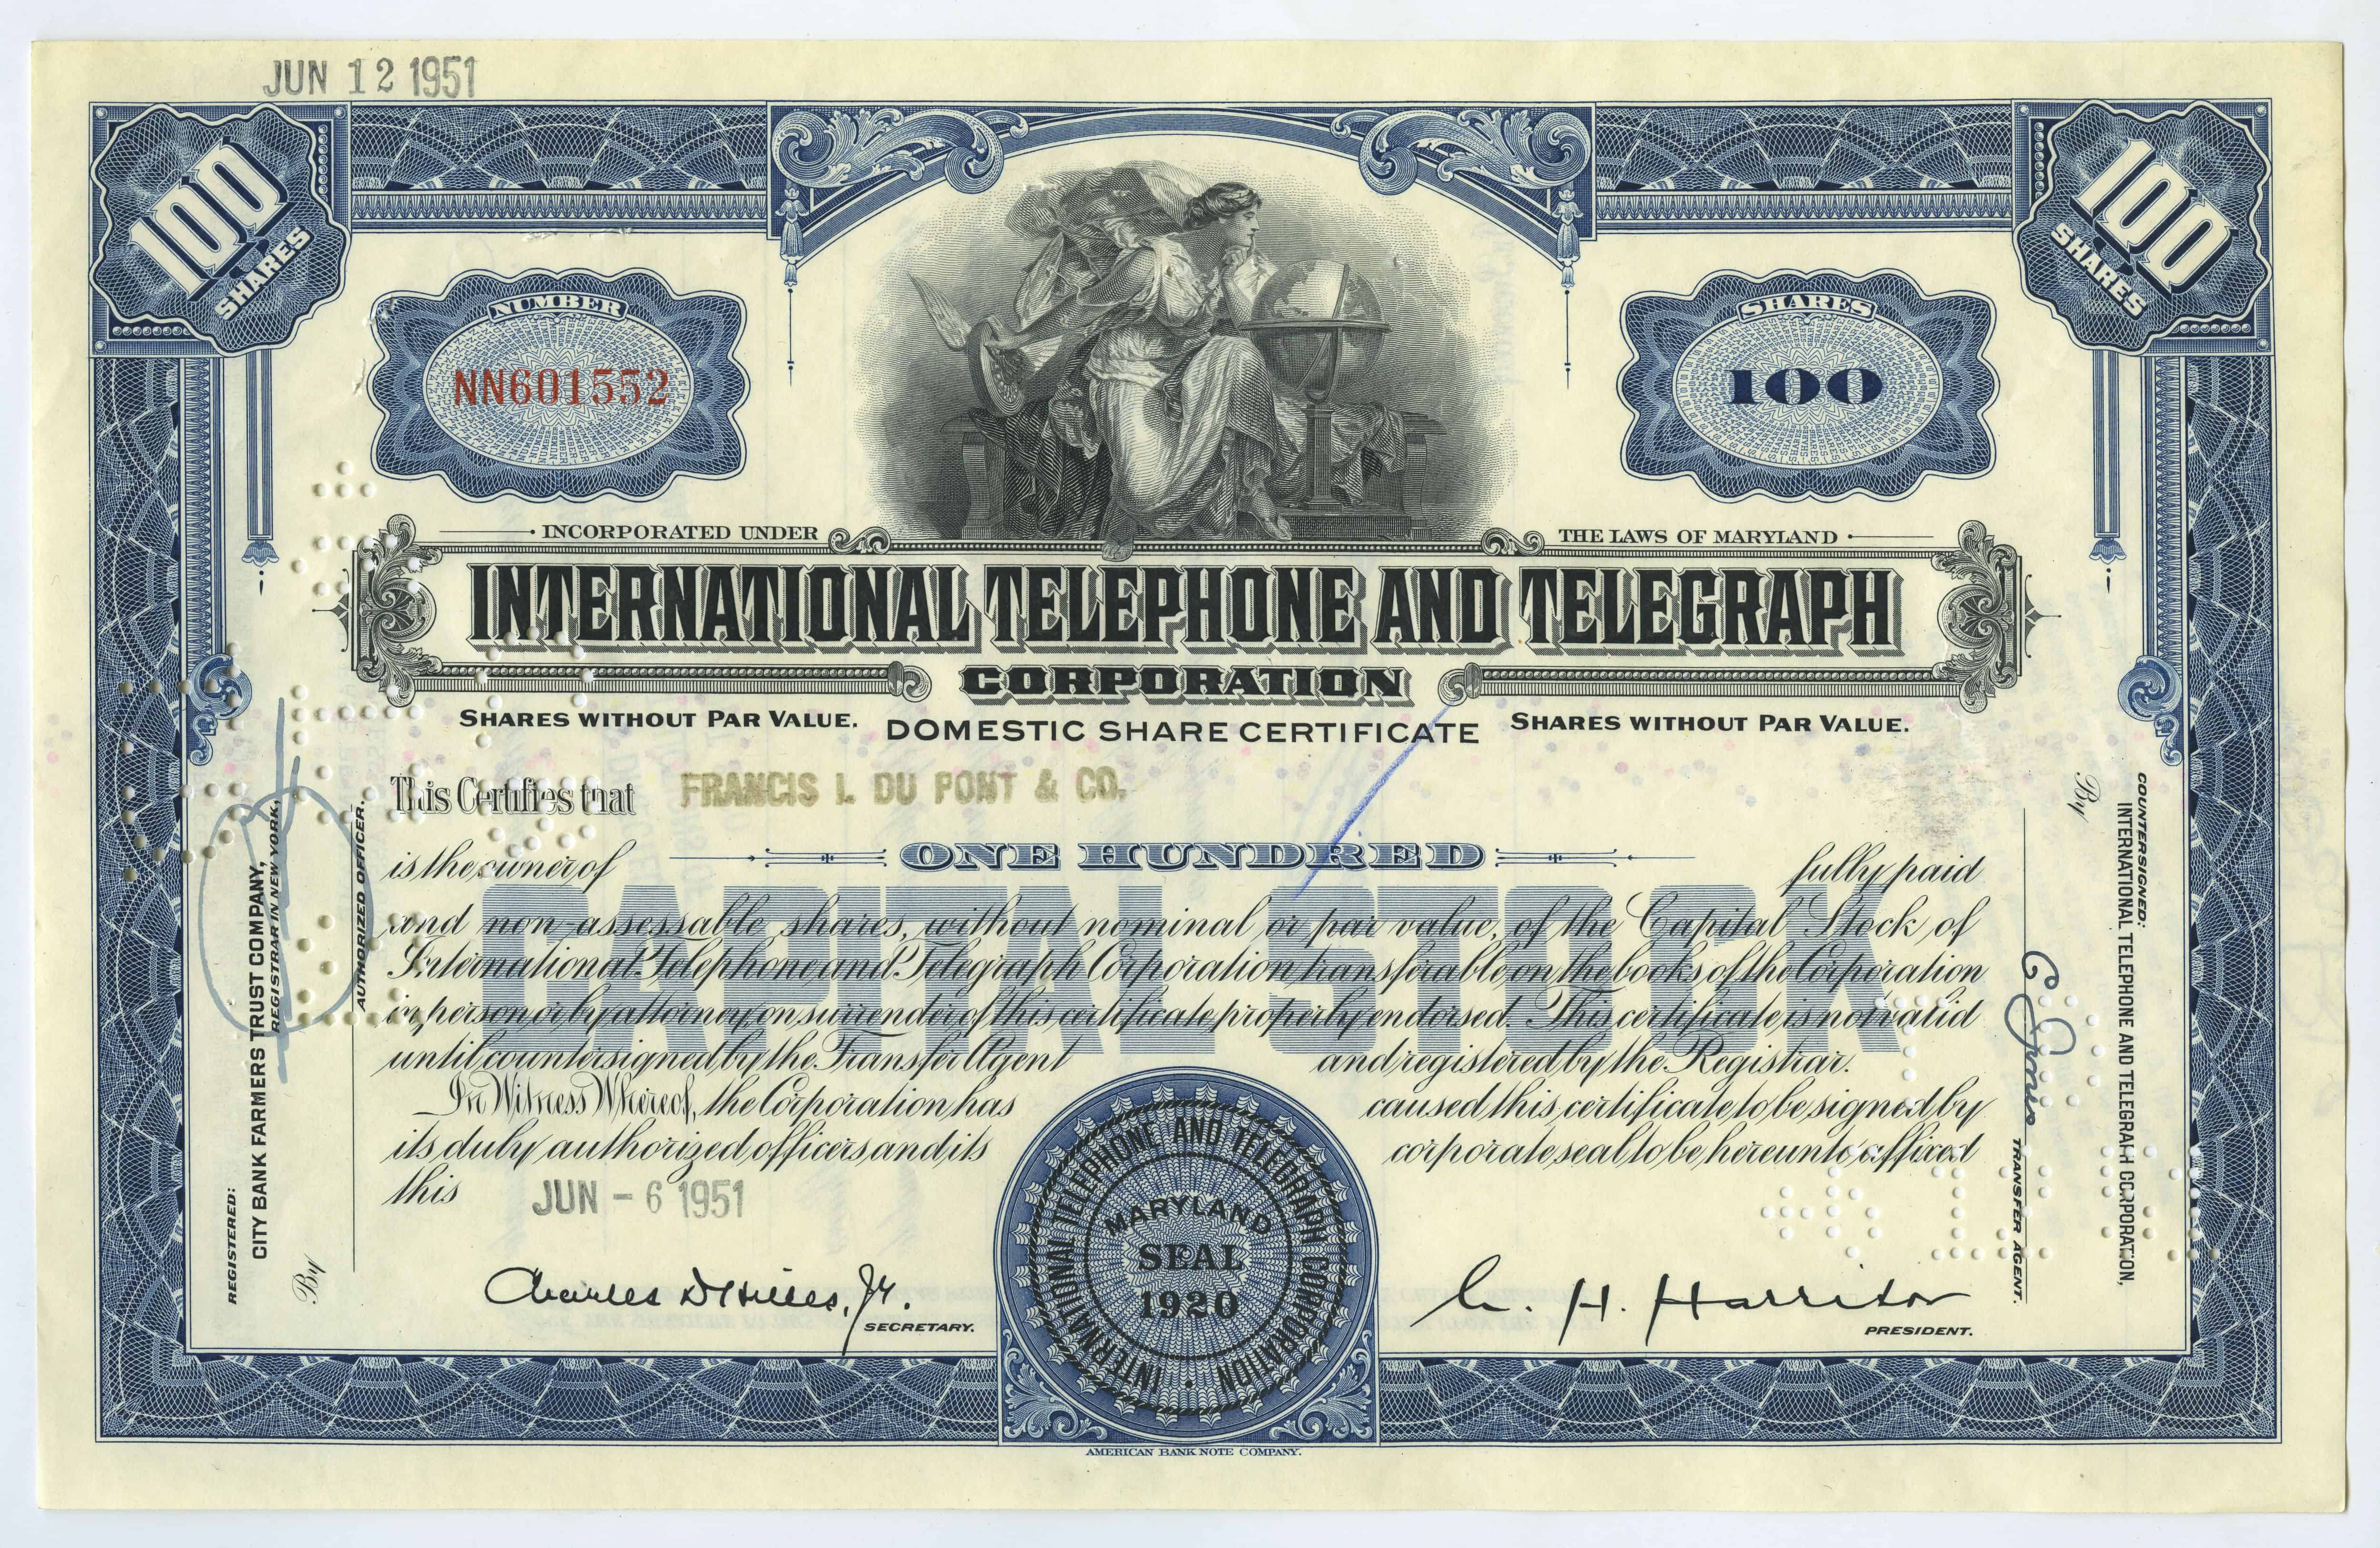 100 akcji spółki International Telephone and Telegraph Corporation z dnia 6 czerwca 1951 roku